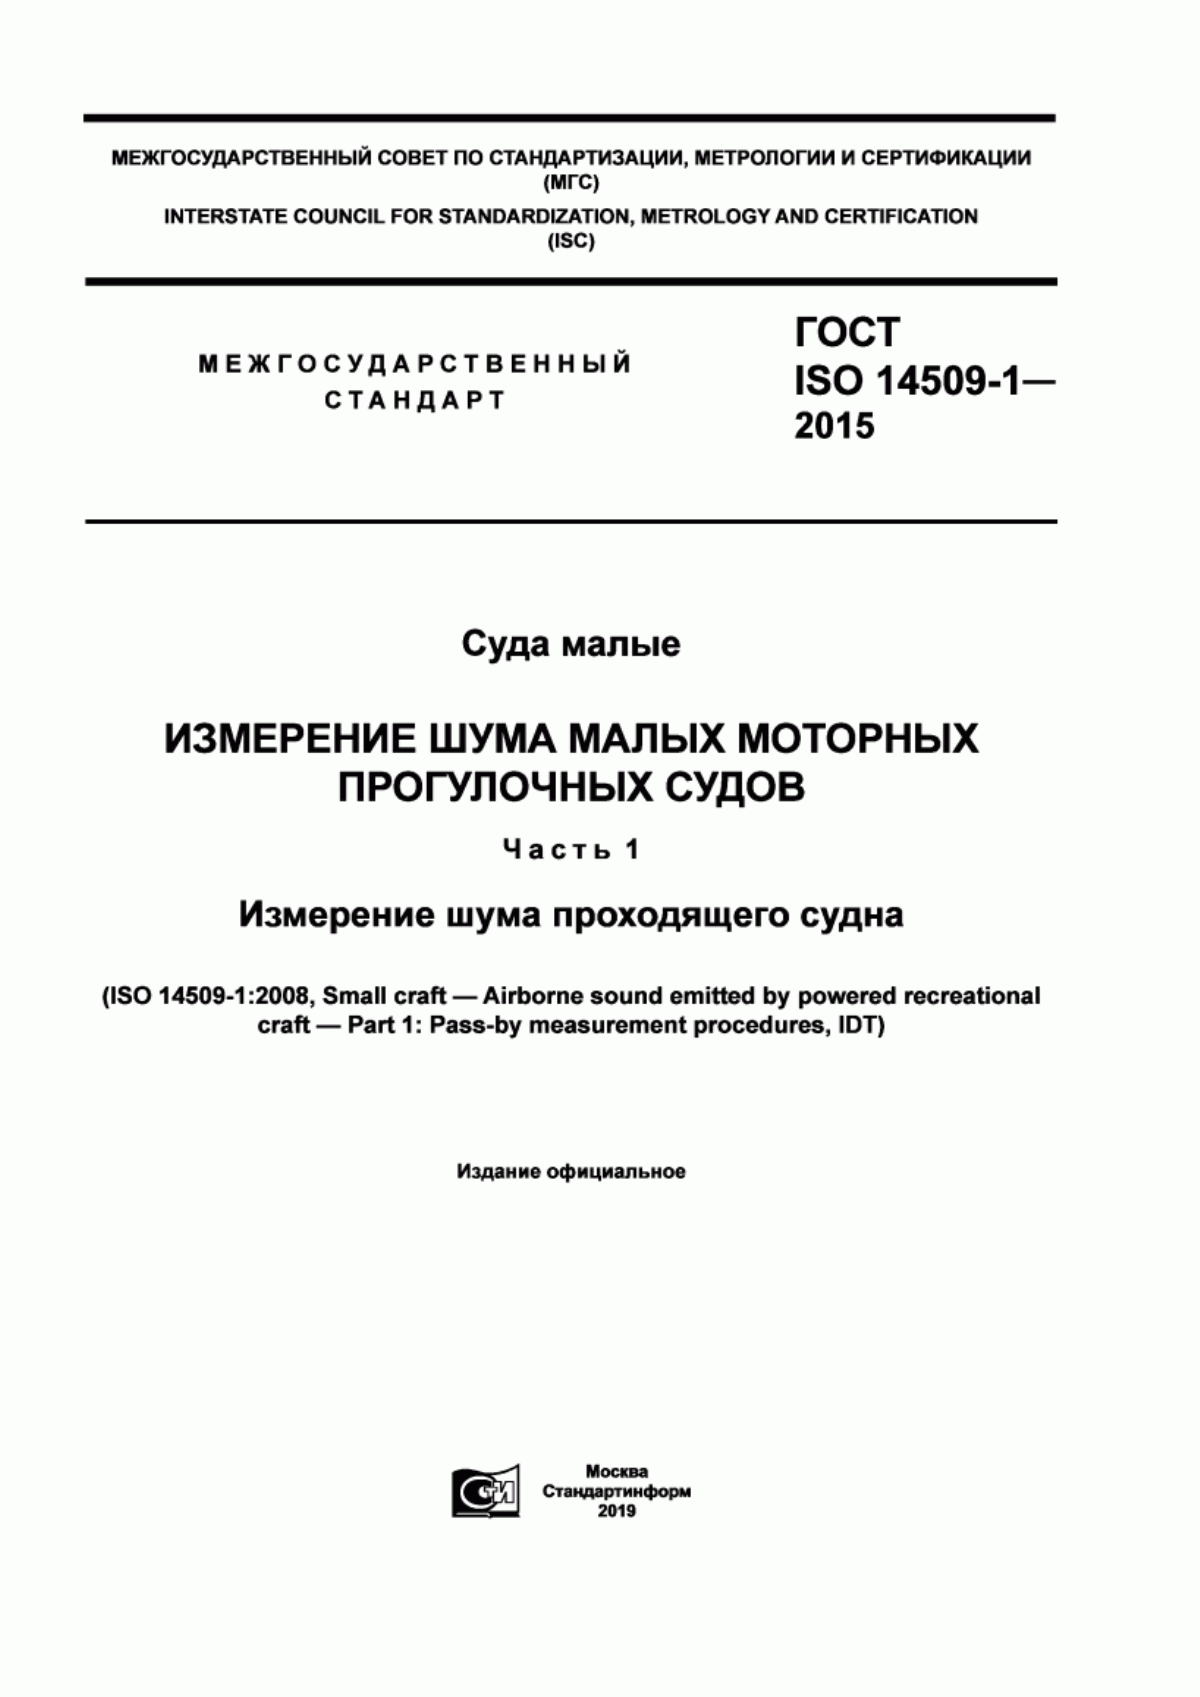 ГОСТ ISO 14509-1-2015 Суда малые. Измерение шума малых моторных прогулочных судов. Часть 1. Измерение шума проходящего судна